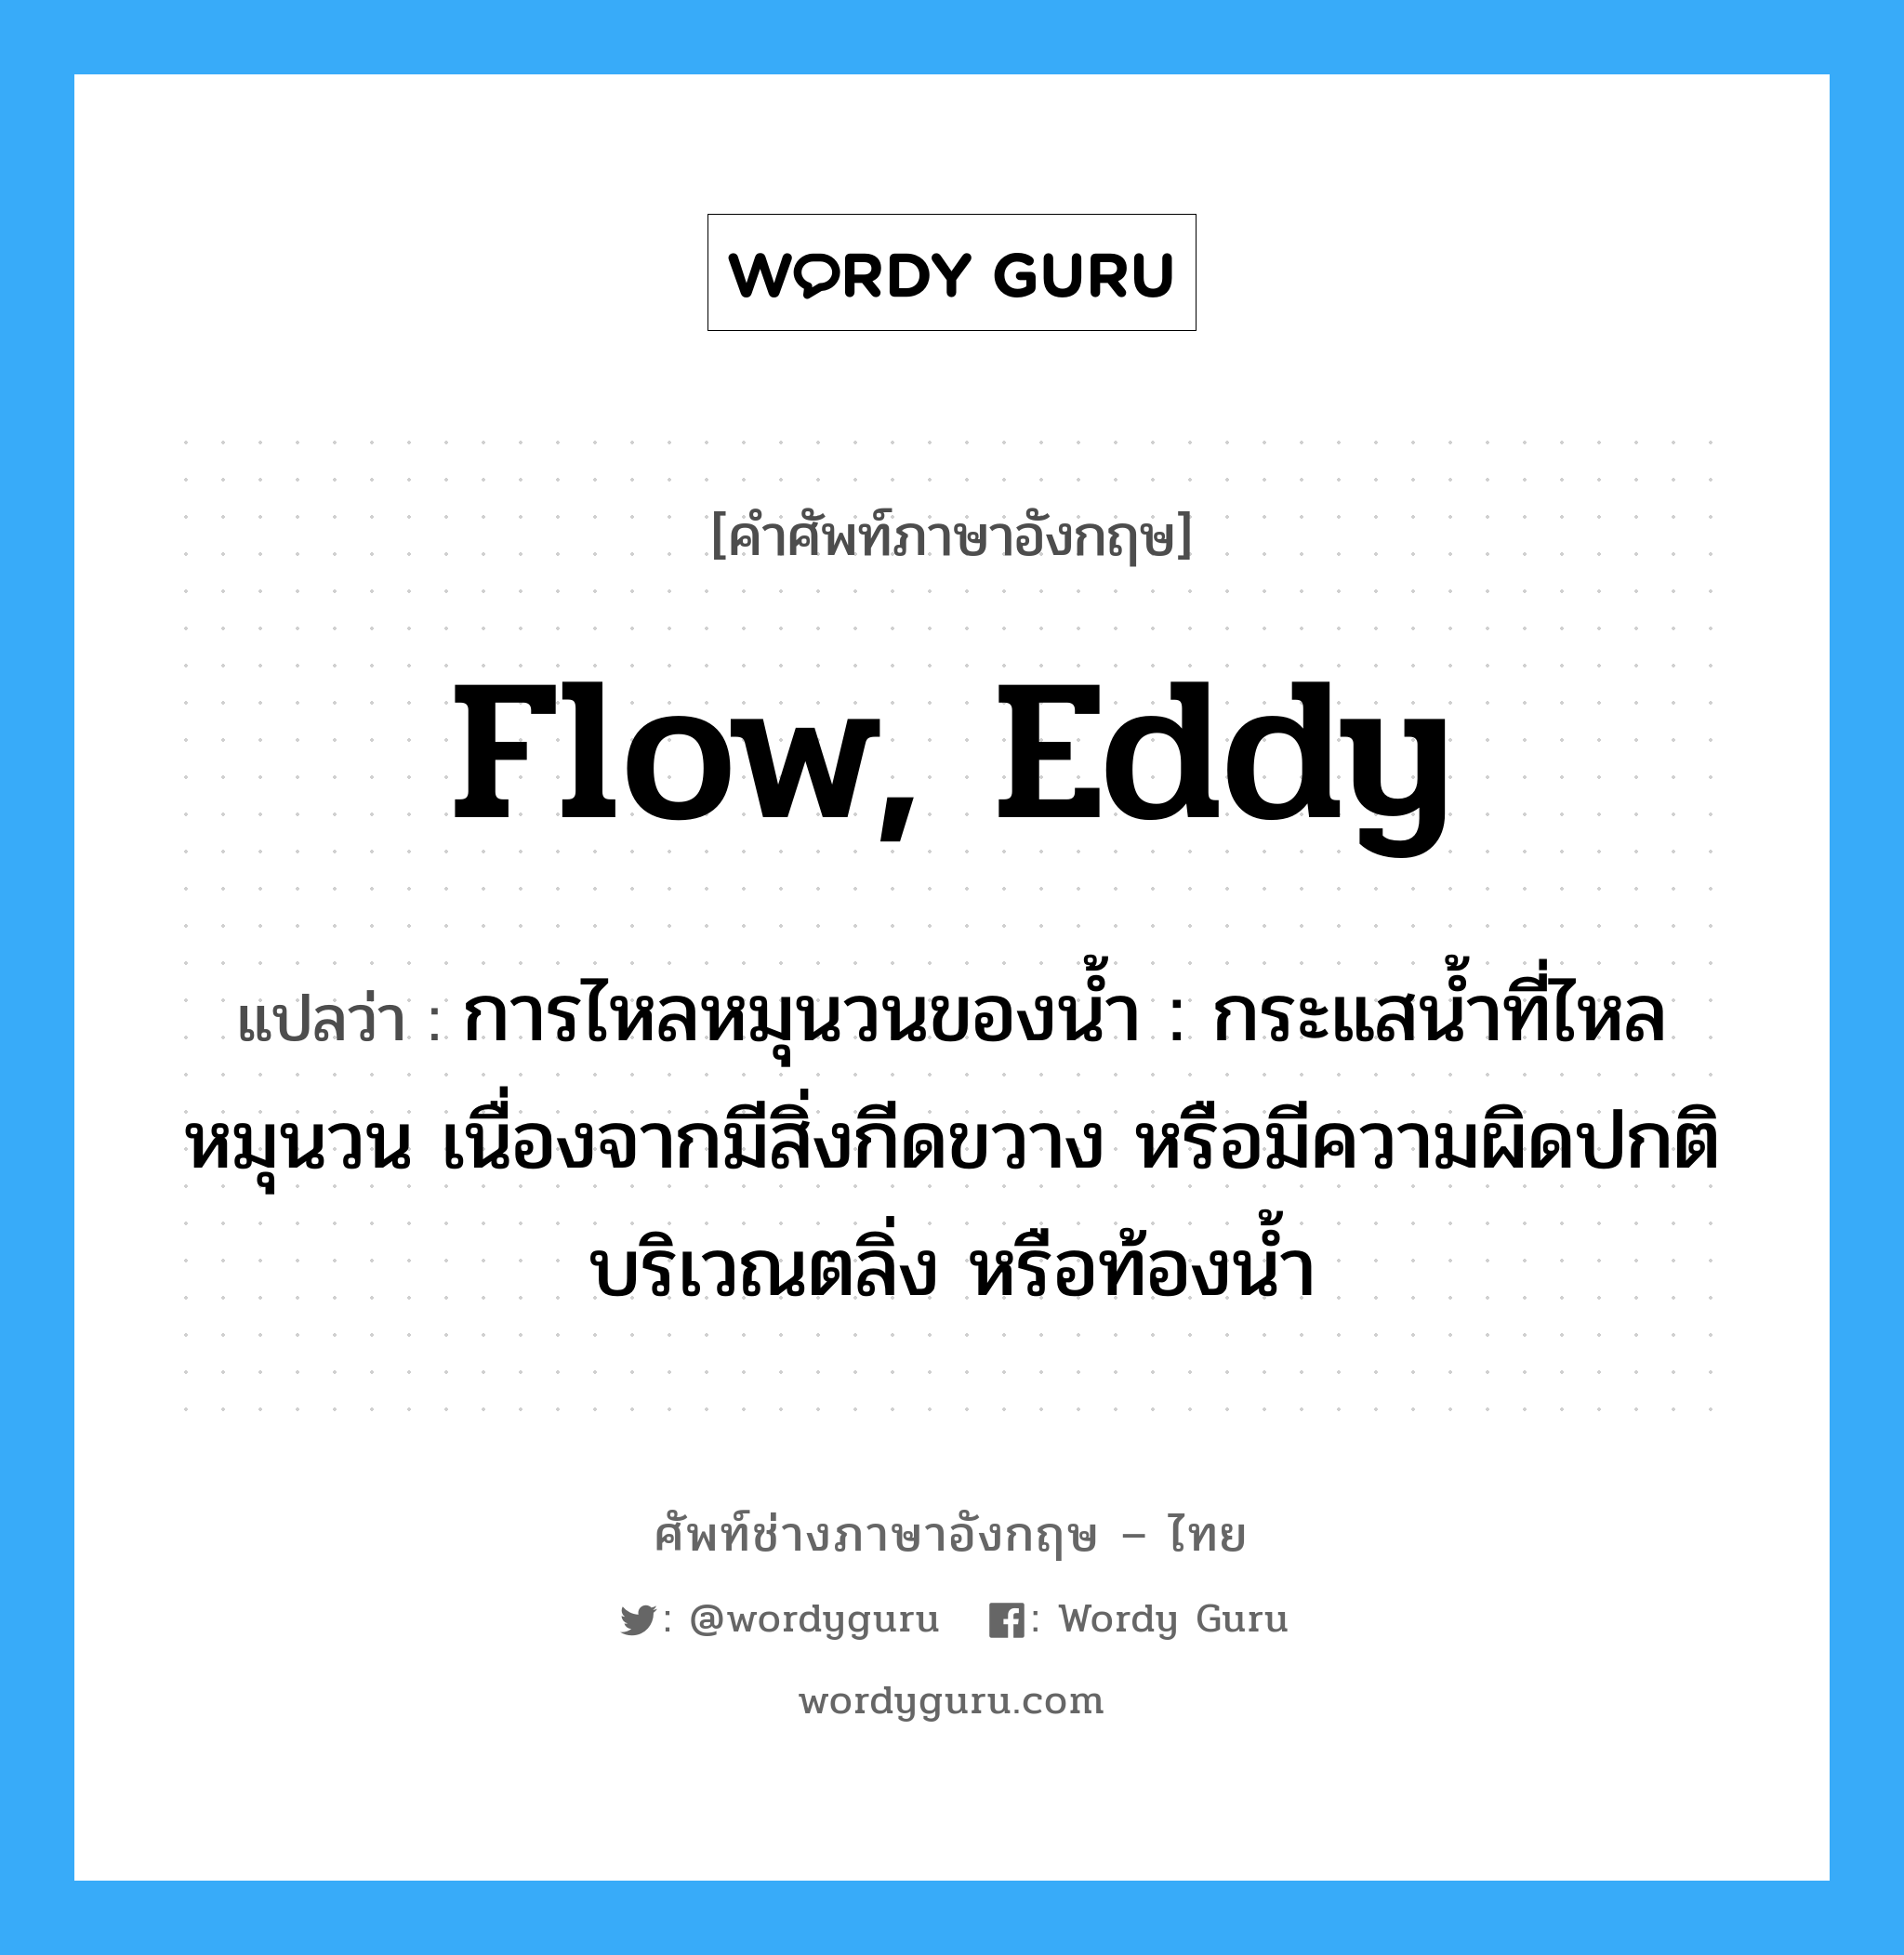 flow, eddy แปลว่า?, คำศัพท์ช่างภาษาอังกฤษ - ไทย flow, eddy คำศัพท์ภาษาอังกฤษ flow, eddy แปลว่า การไหลหมุนวนของน้ำ : กระแสน้ำที่ไหลหมุนวน เนื่องจากมีสิ่งกีดขวาง หรือมีความผิดปกติบริเวณตลิ่ง หรือท้องน้ำ